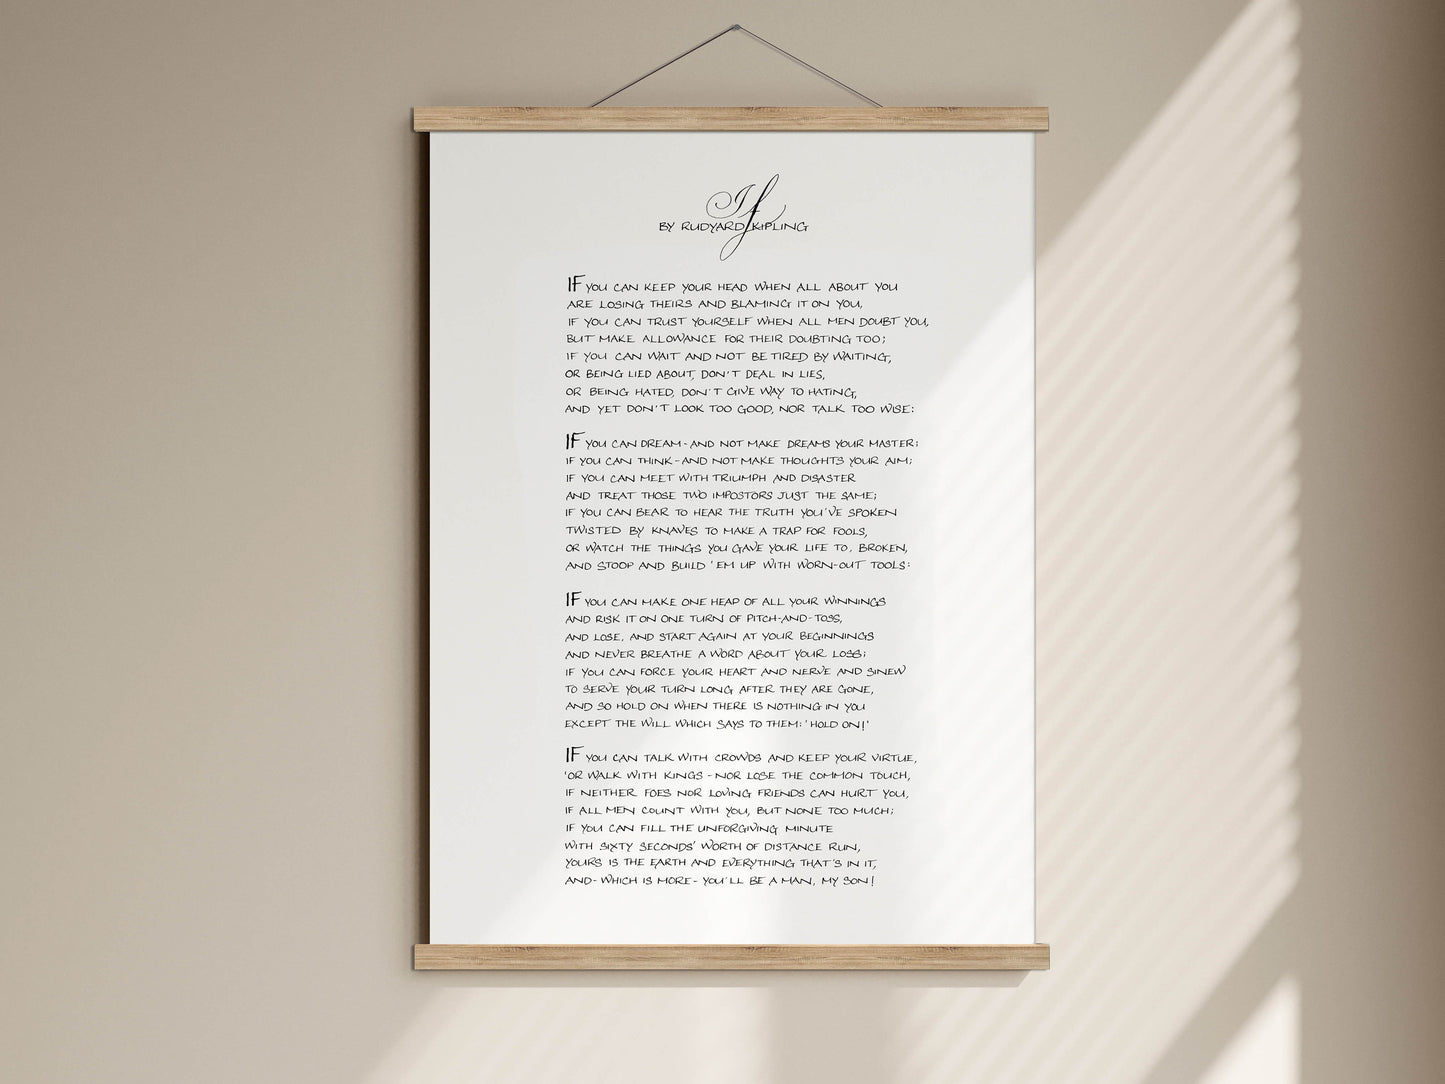 kipling poem if poster framed print